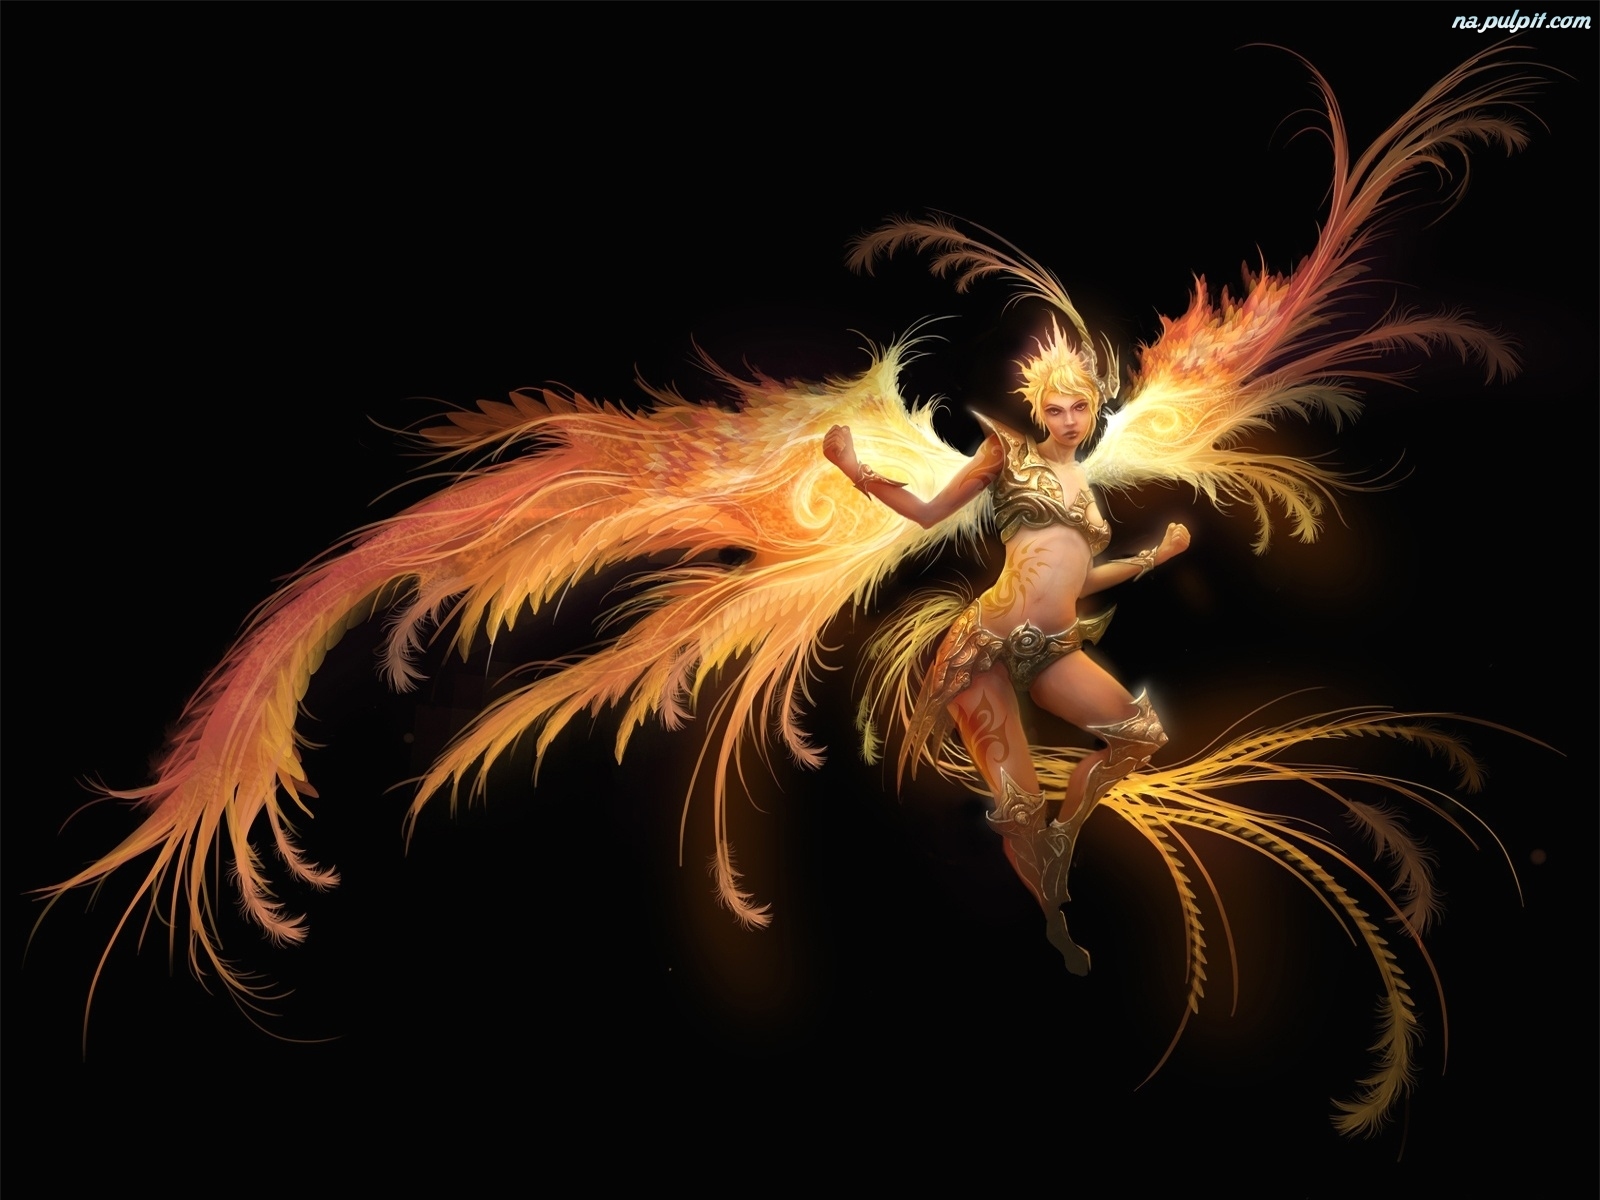 Fantasy - ogniu-kobieta-aniol-piora-w.jpeg